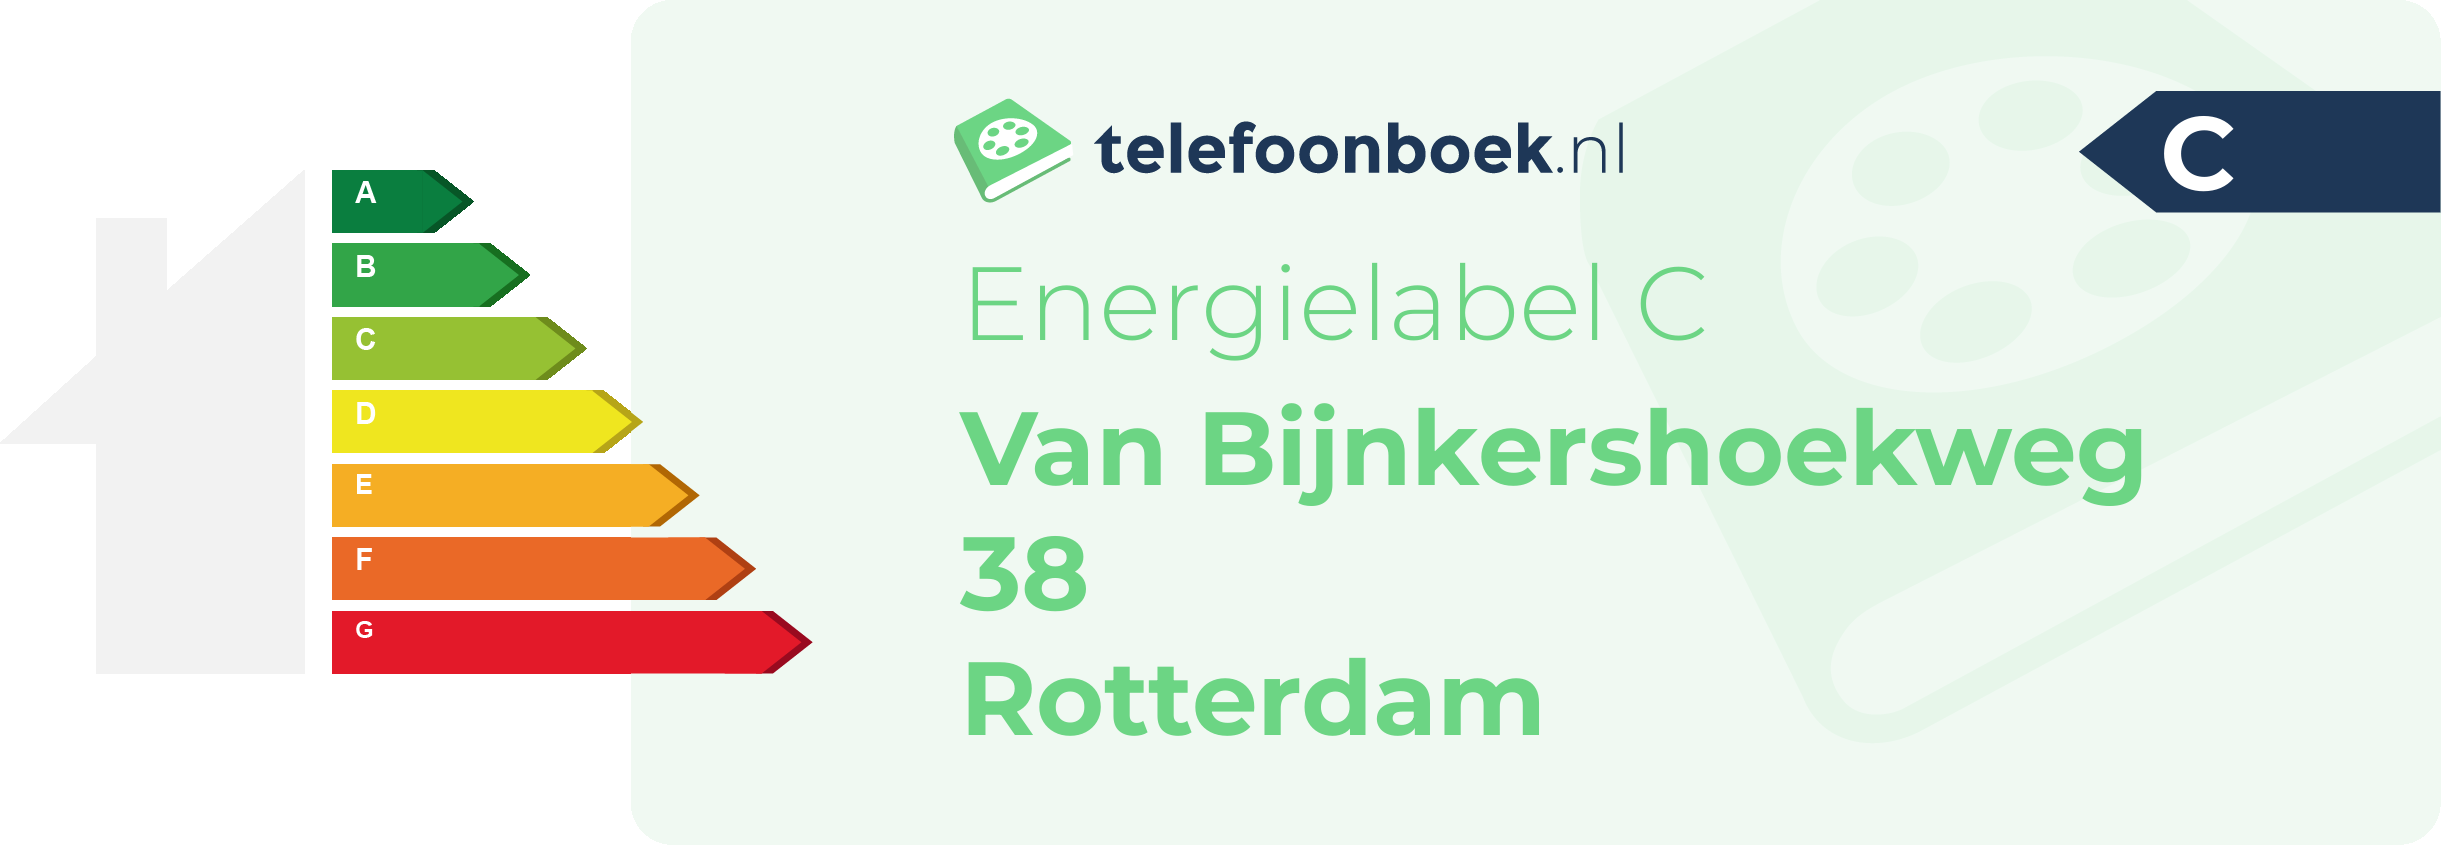 Energielabel Van Bijnkershoekweg 38 Rotterdam